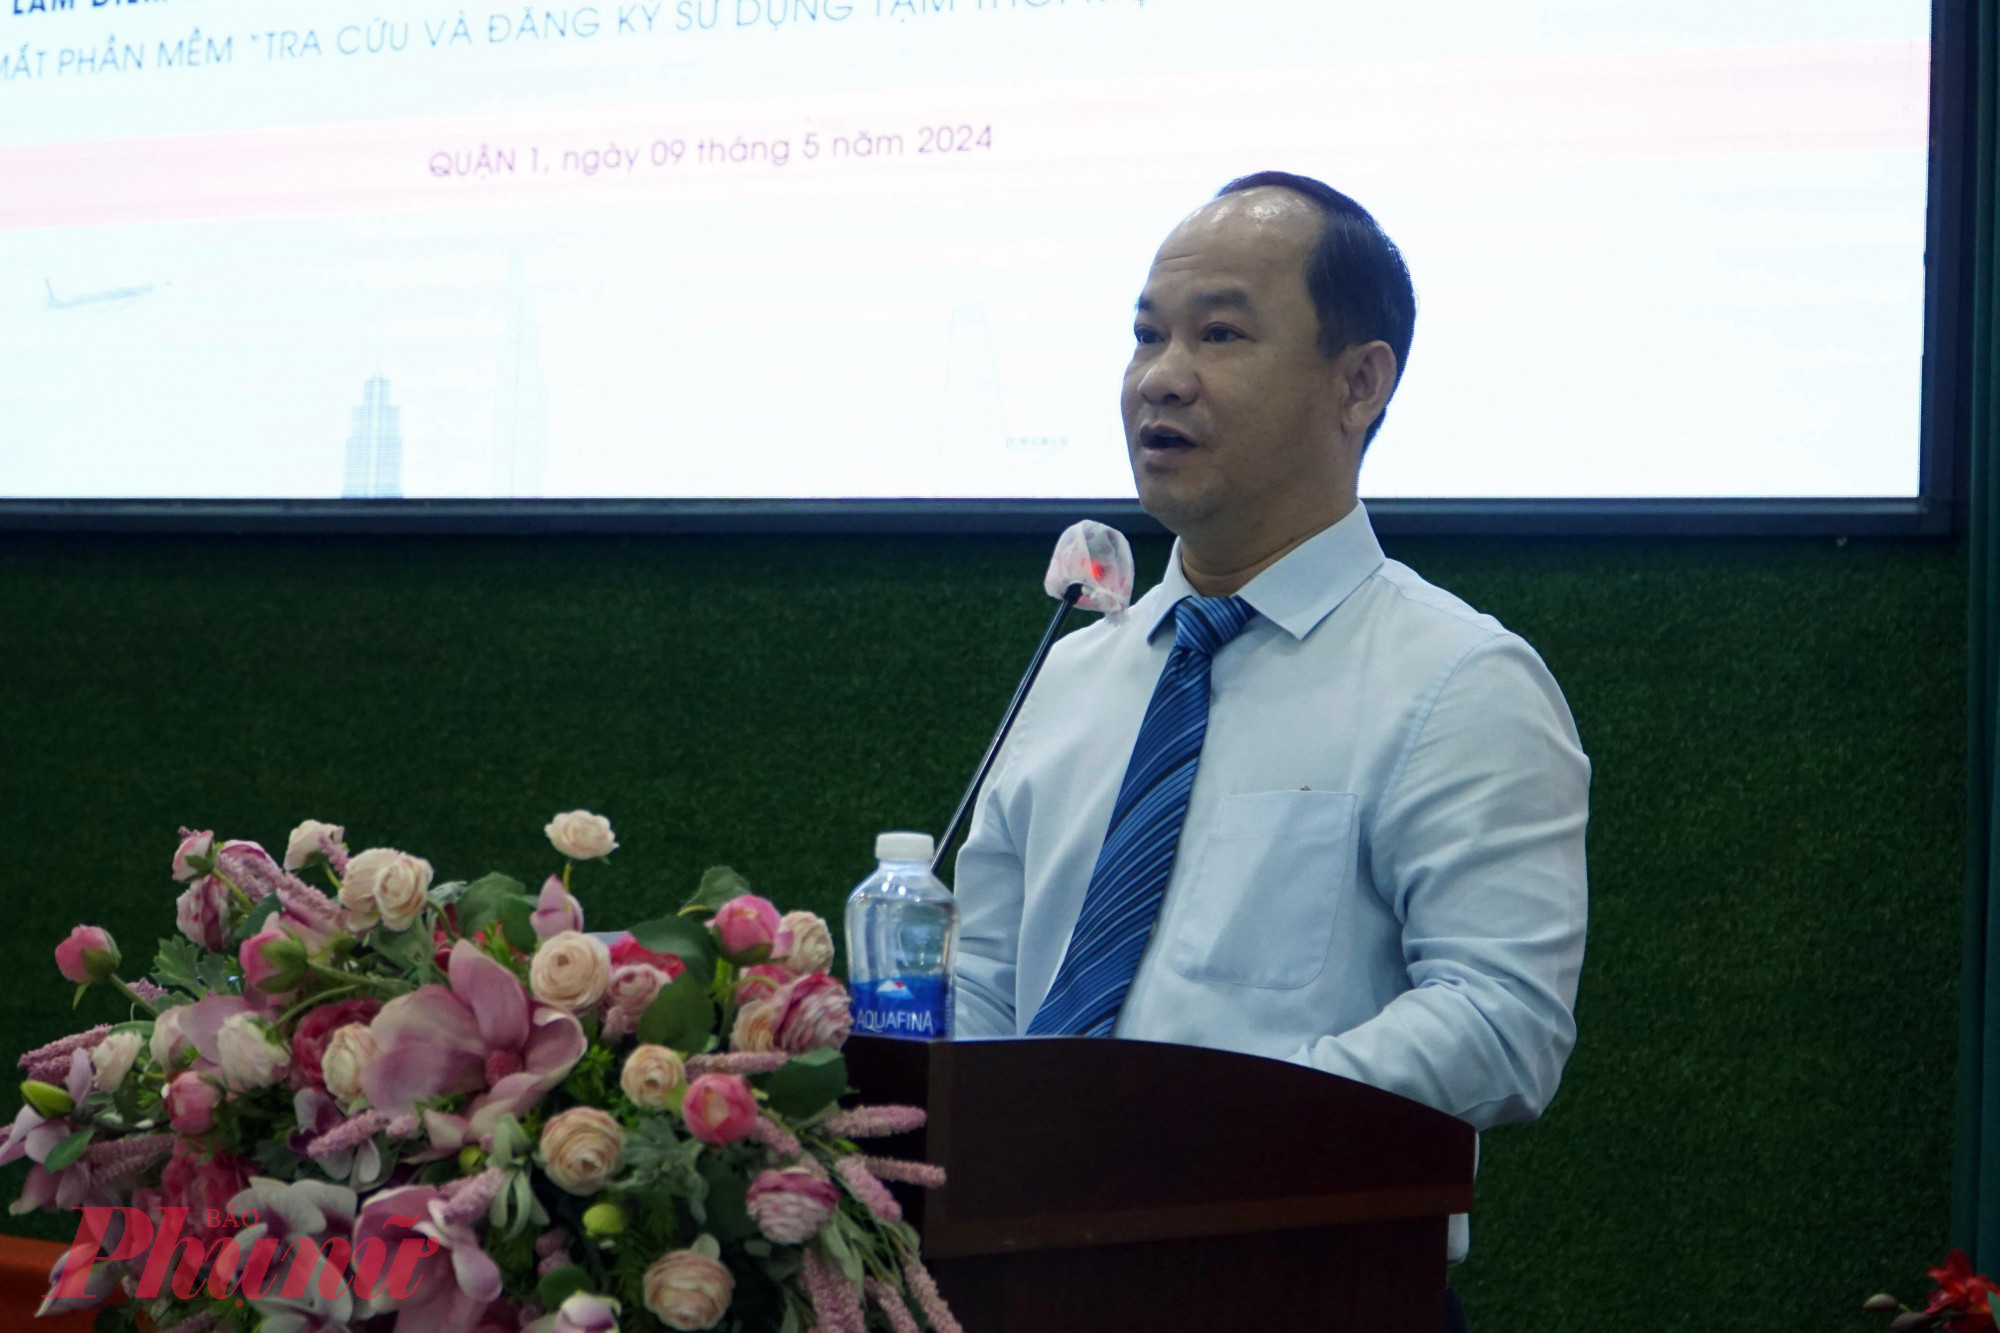 Chủ tịch UBND quận 1 Lê Đức Thanh chỉ đạo tại hội nghị - Ảnh: Vũ Quyền